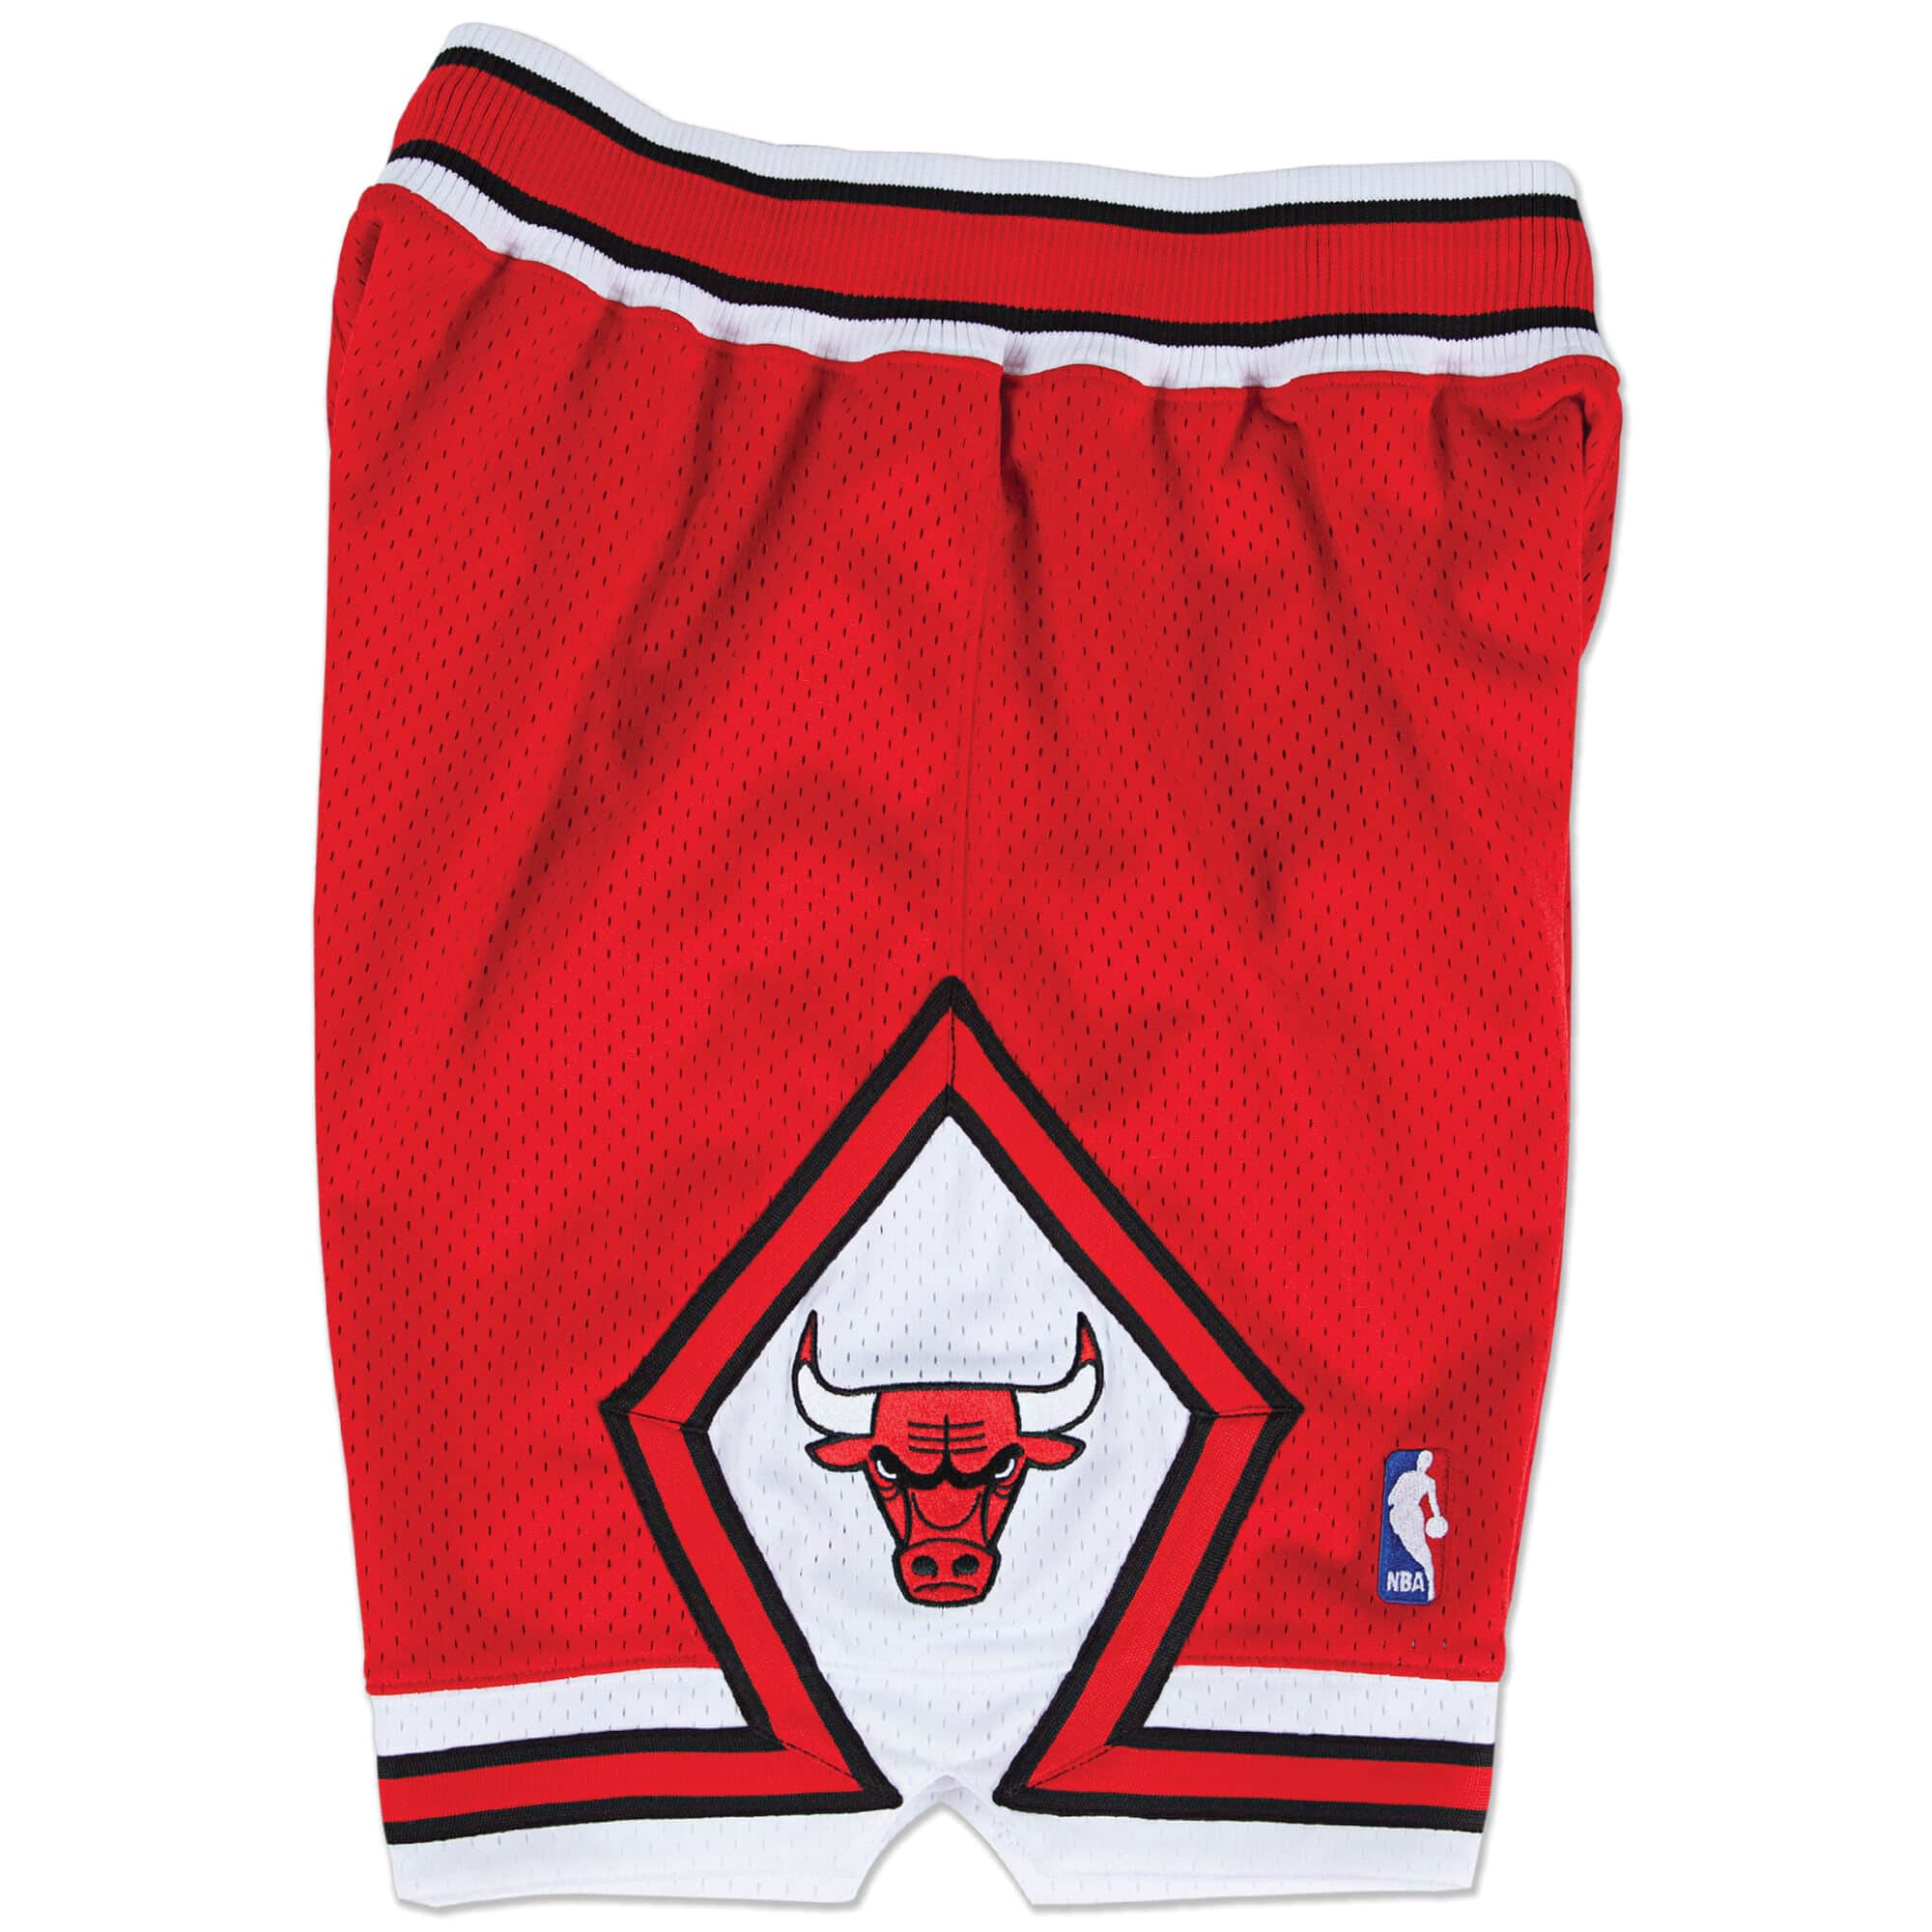 Chicago Bulls Shorts 